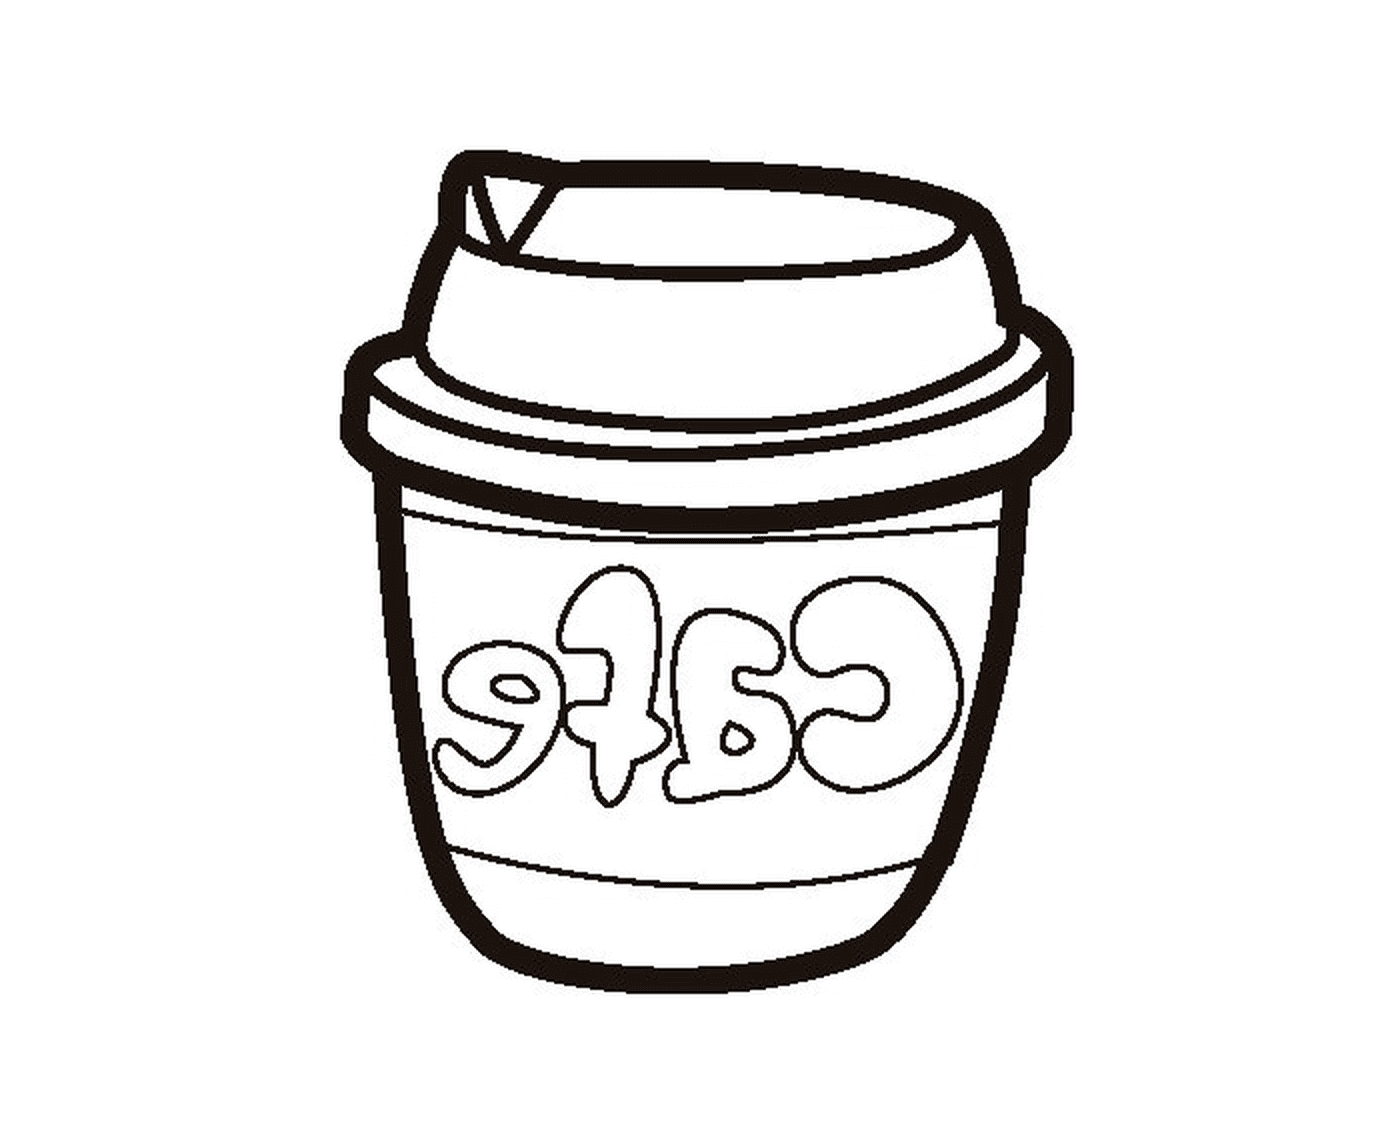  Um copo de café Starbucks 